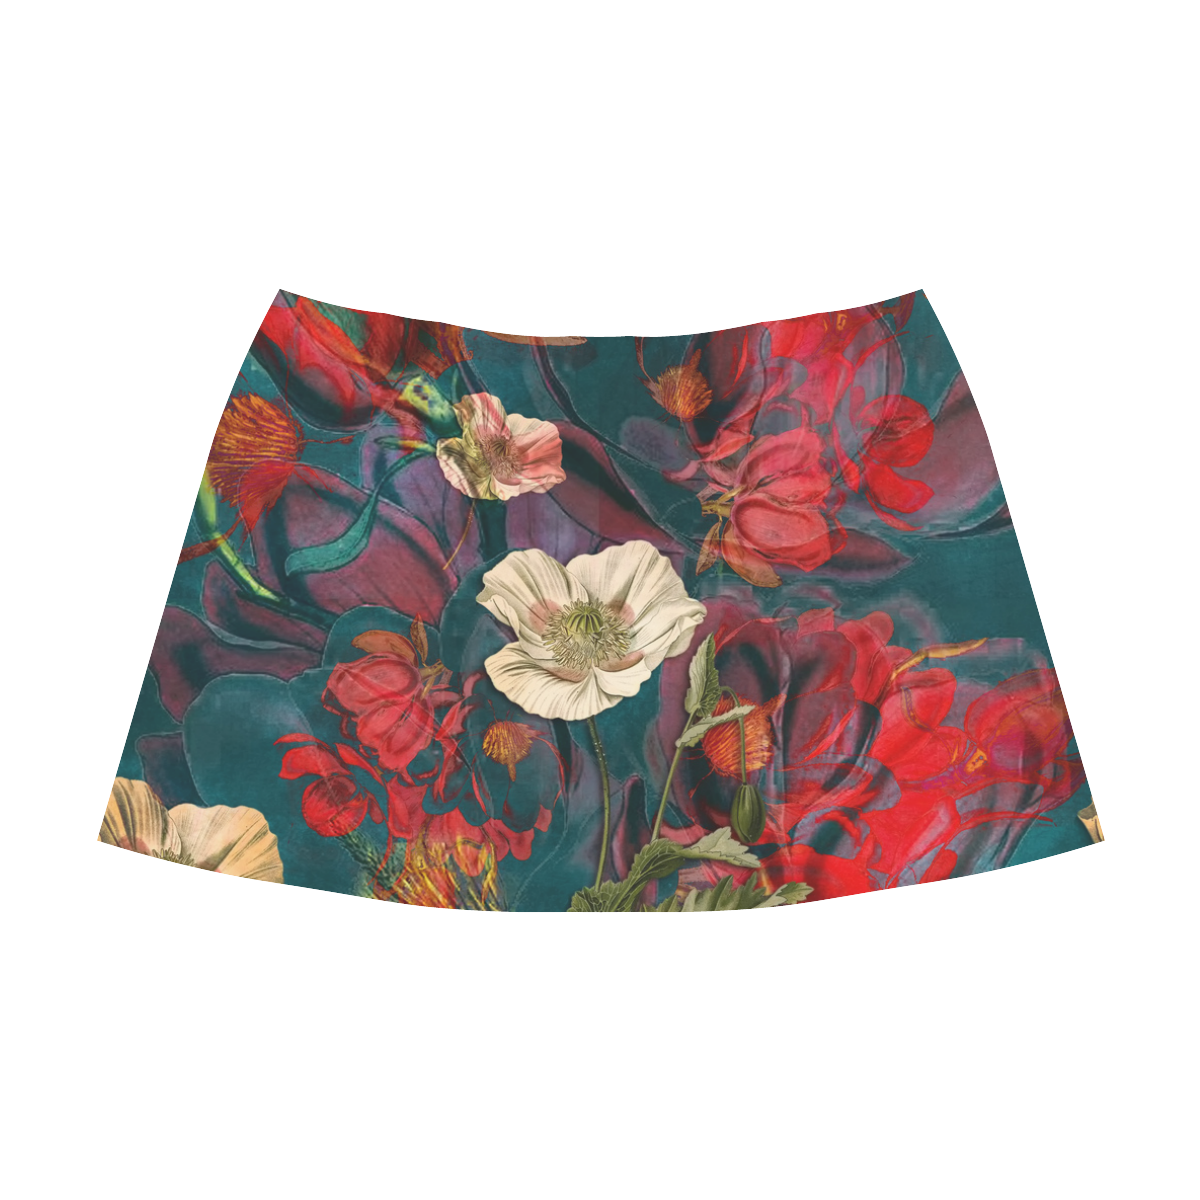 flora 3 Mnemosyne Women's Crepe Skirt (Model D16)